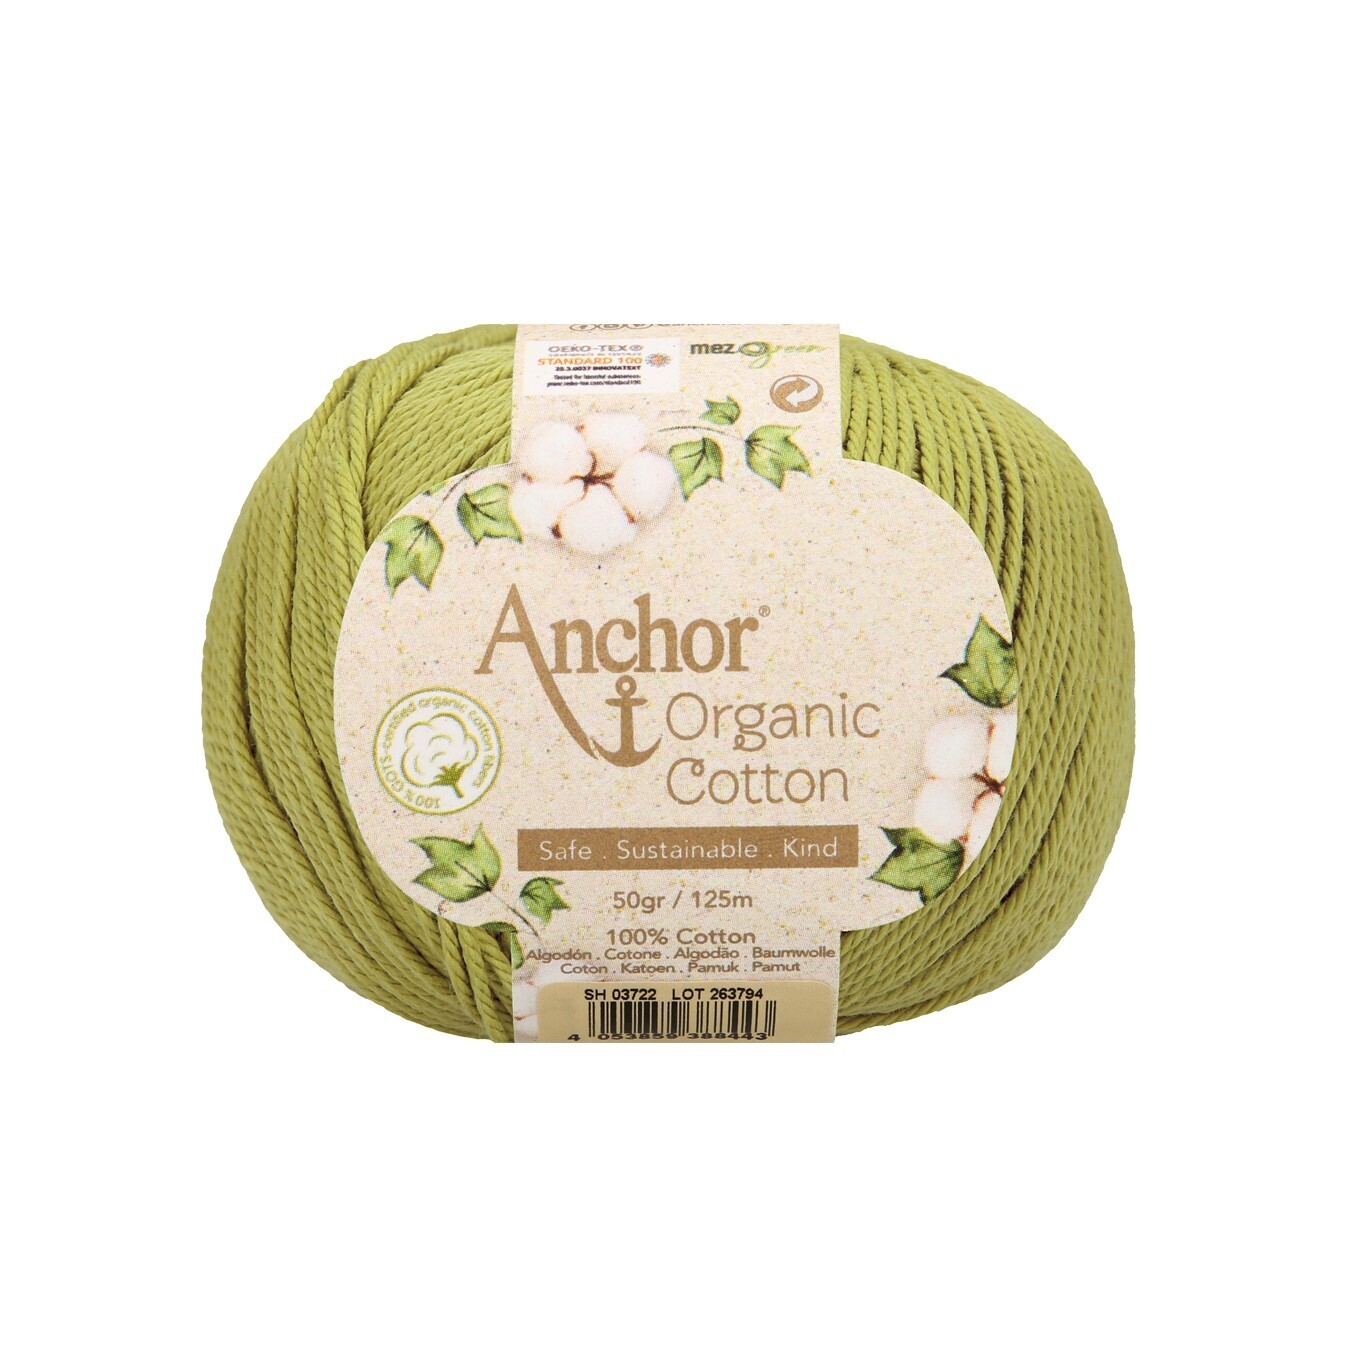 Anchor Organic Cotton #06523